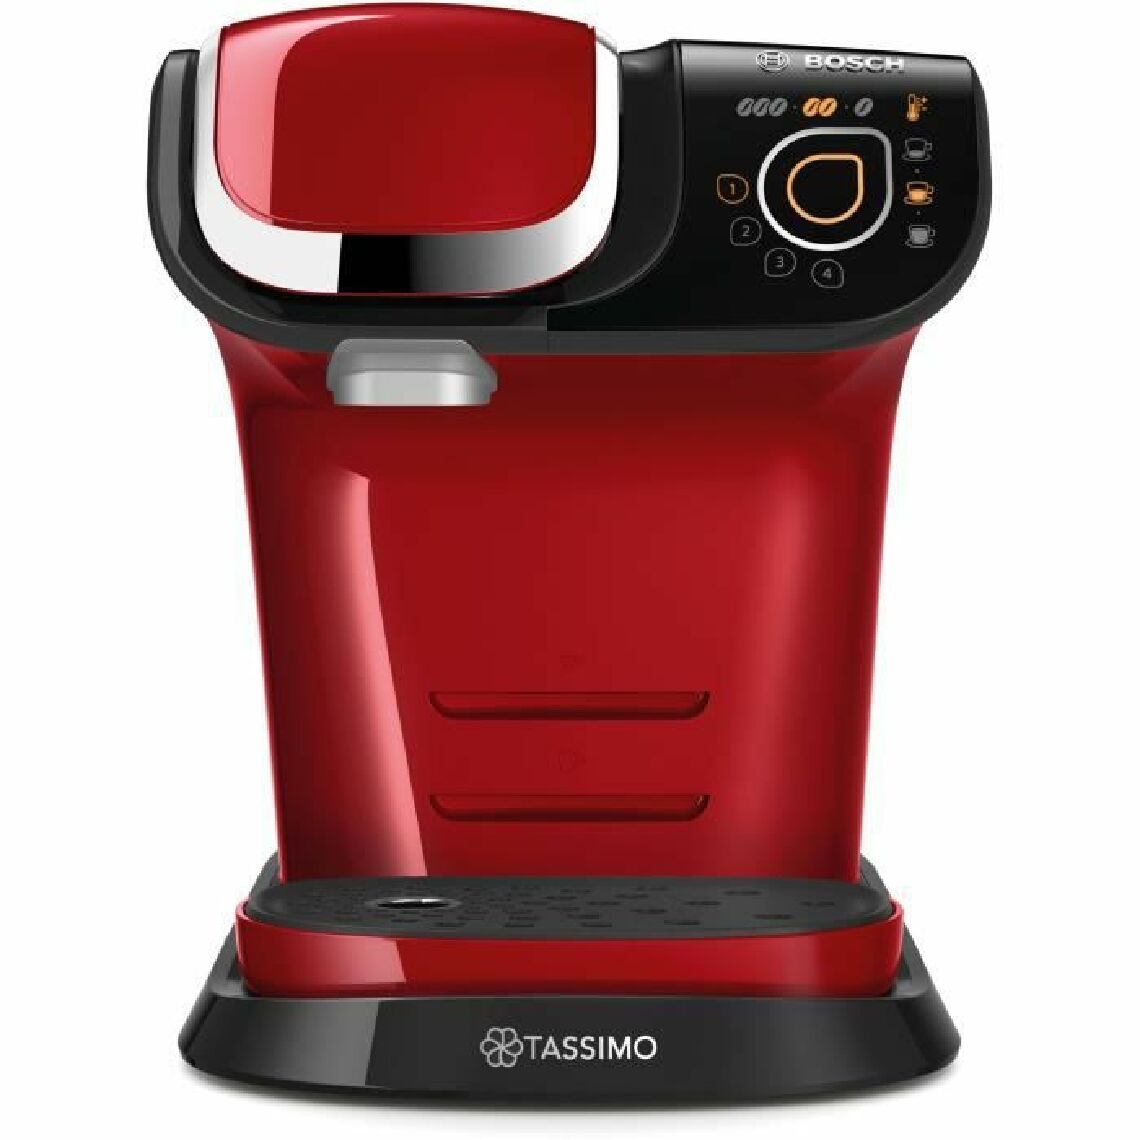 Bosch - BOSCH - TAS6503 - Machine a café TASSIMO multi-boissons - Réservoir d'eau 1,3L - Arret automatique - Rouge - Expresso - Cafetière